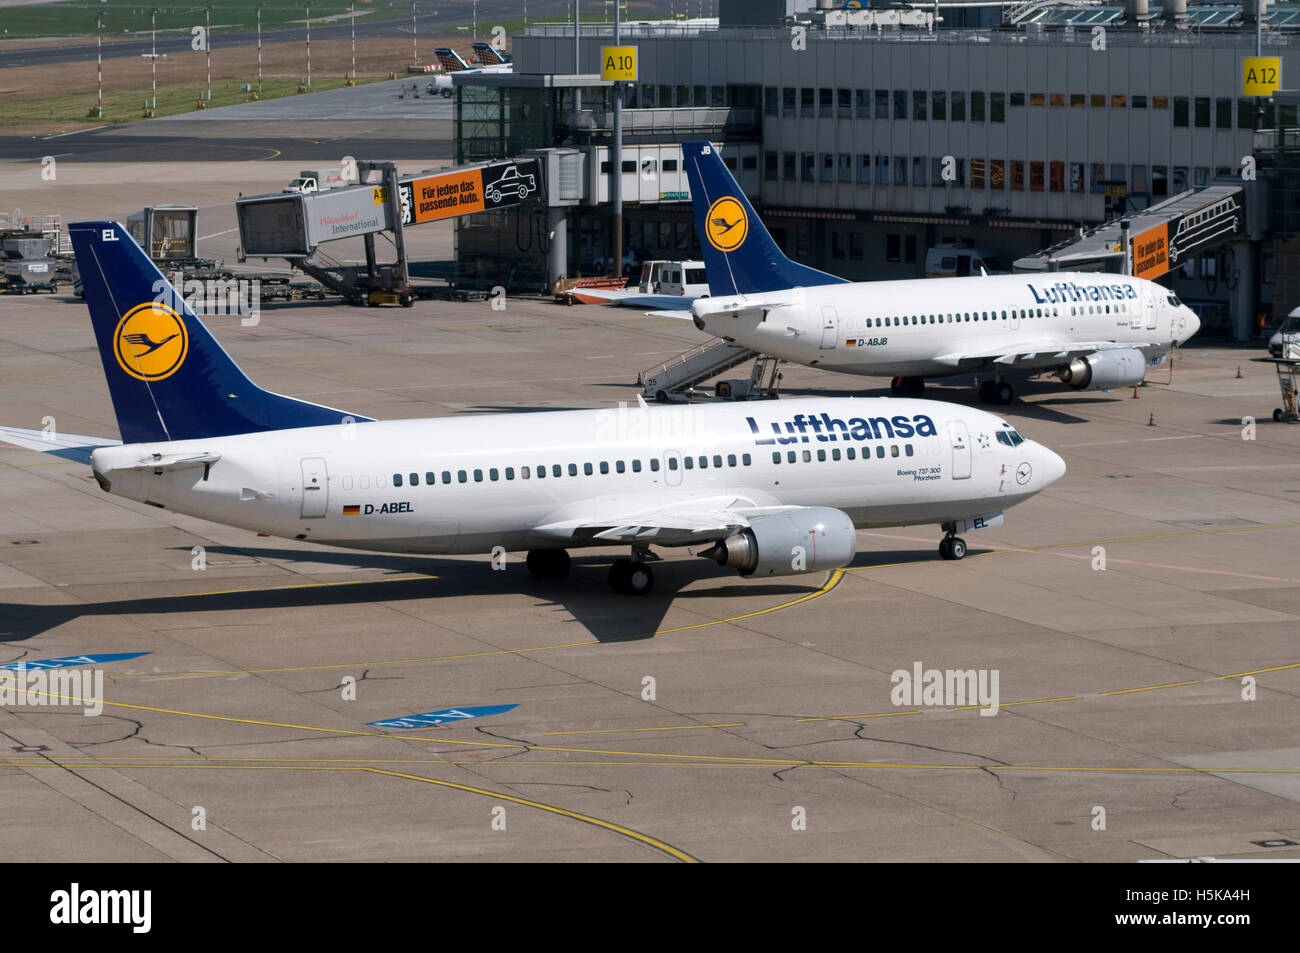 Airport, airfield, aircraft, Lufthansa airline, Boeing 737-300, D-ABEC, Duesseldorf, Rhineland, North Rhine-Westphalia Stock Photo